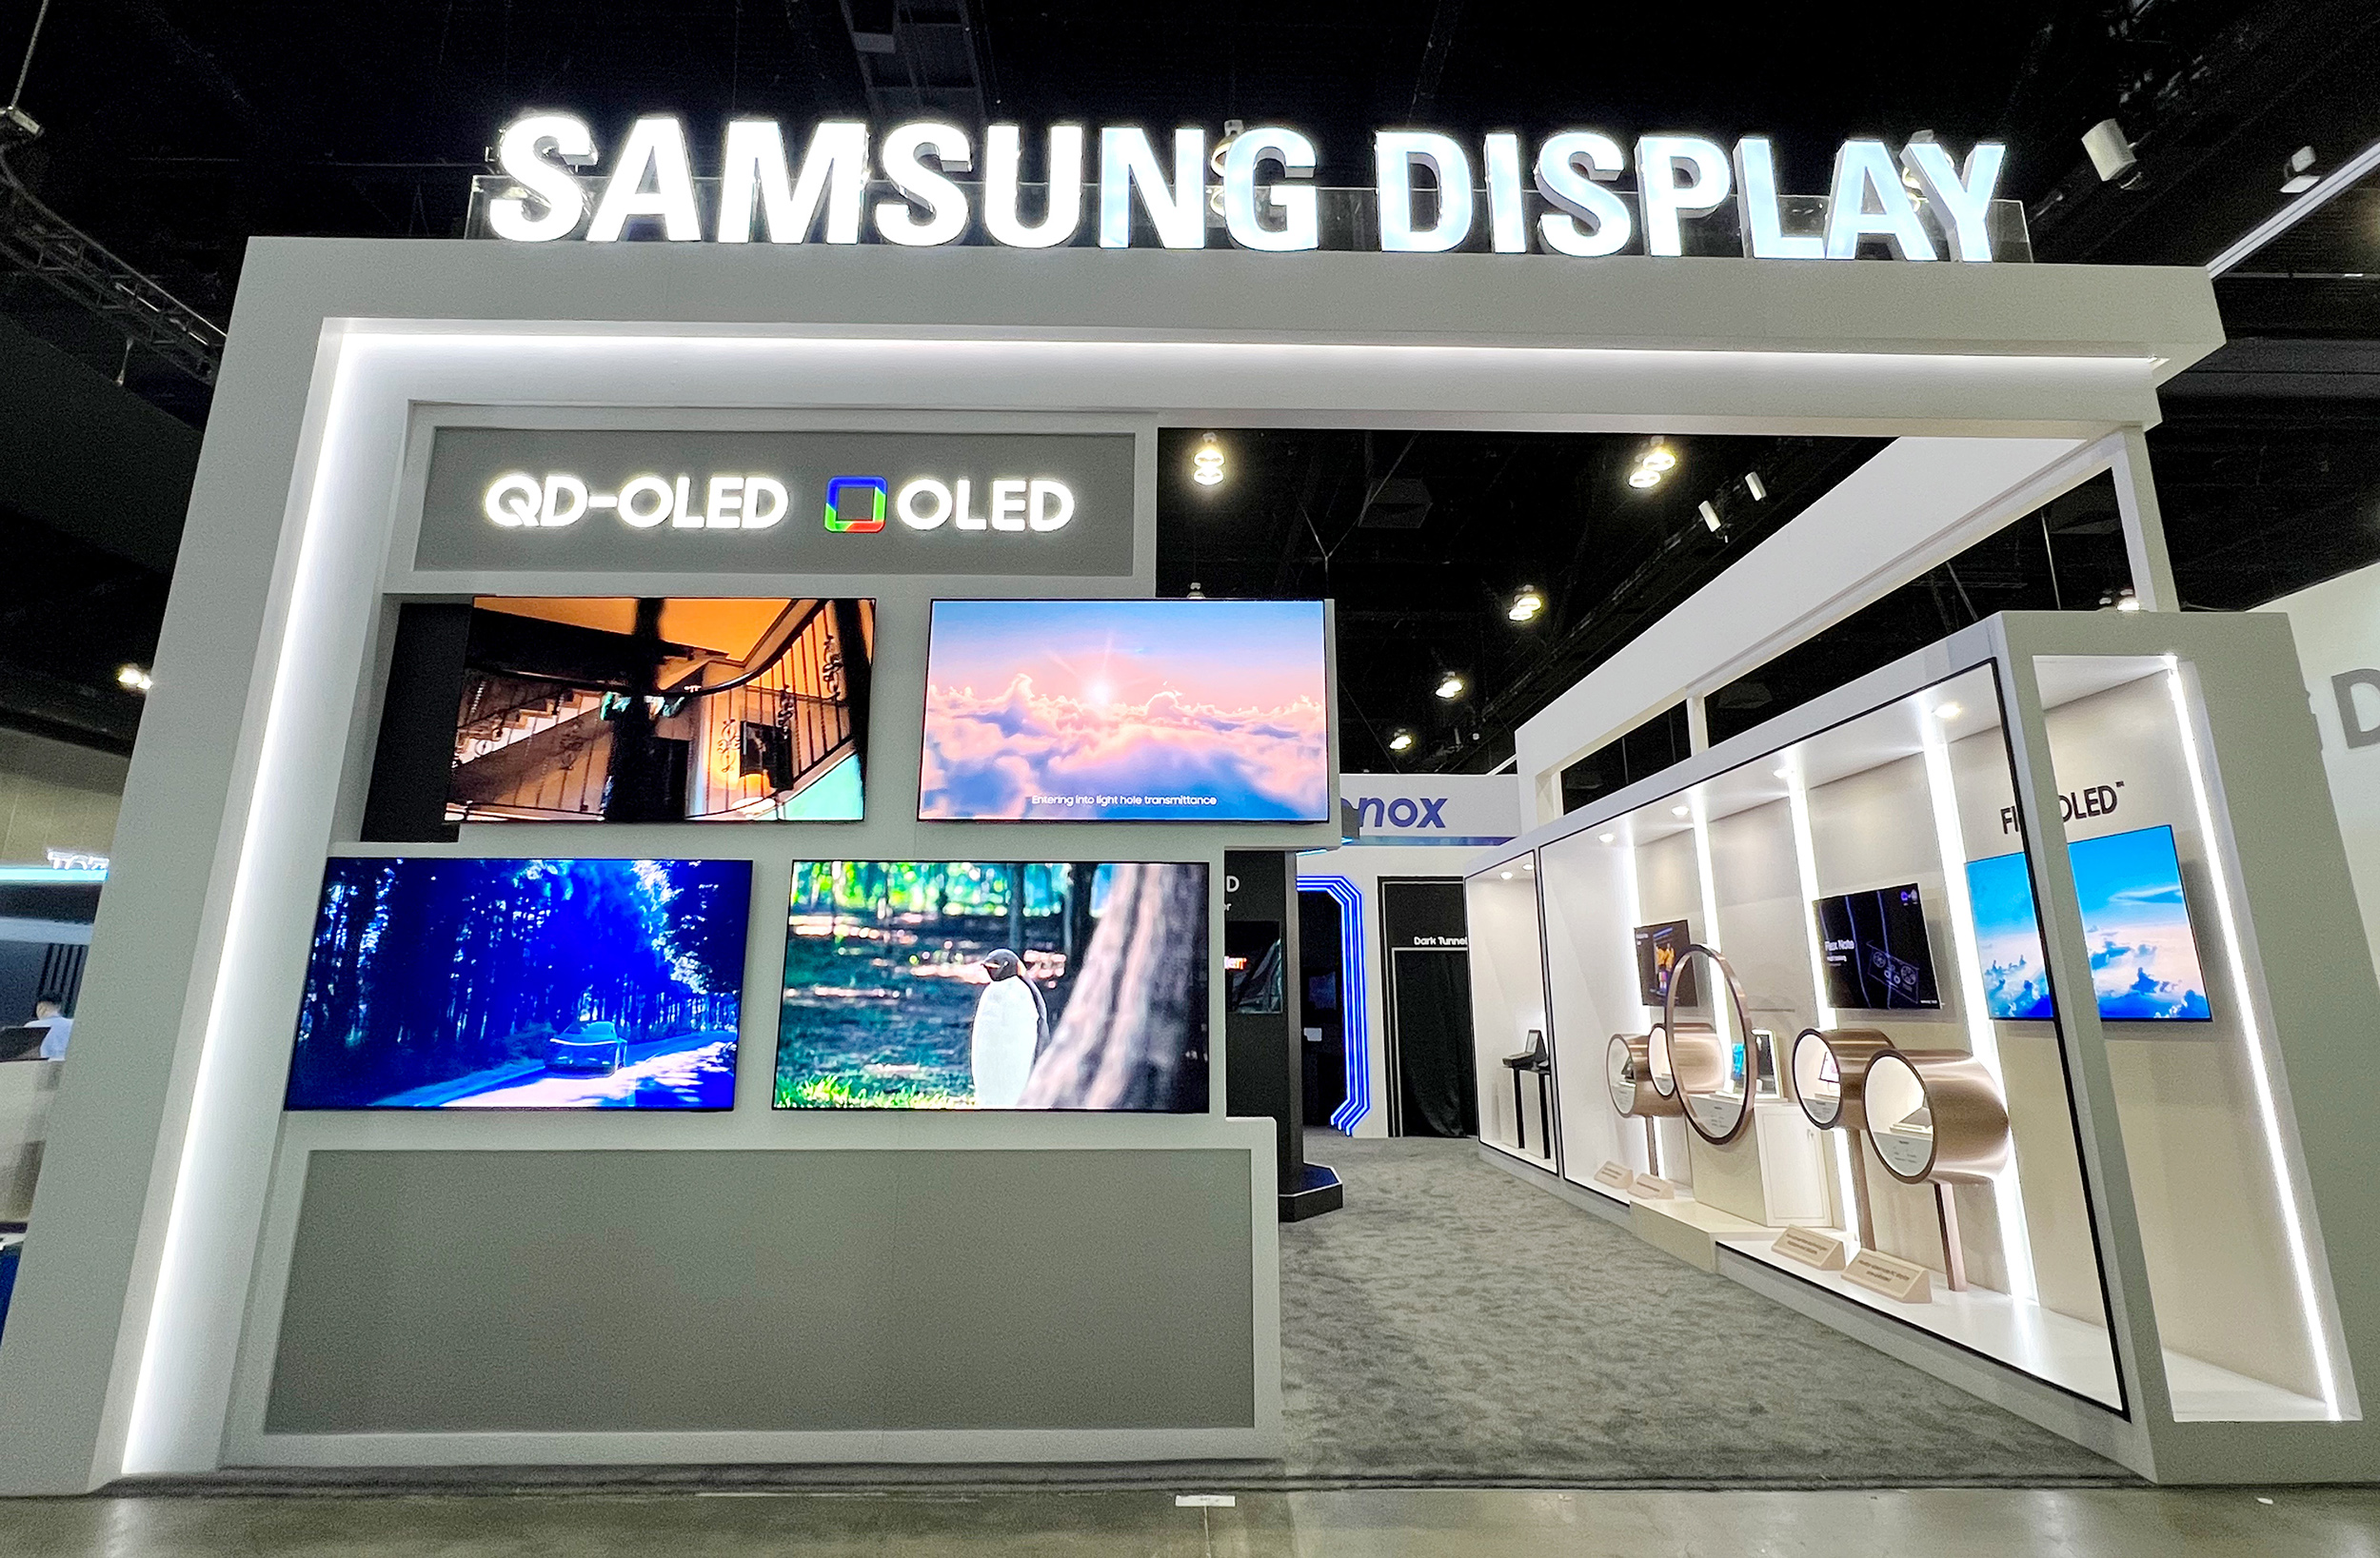 Il nuovo display OLED di Samsung può misurare la frequenza cardiaca, la pressione sanguigna e leggere le impronte digitali in qualsiasi luogo